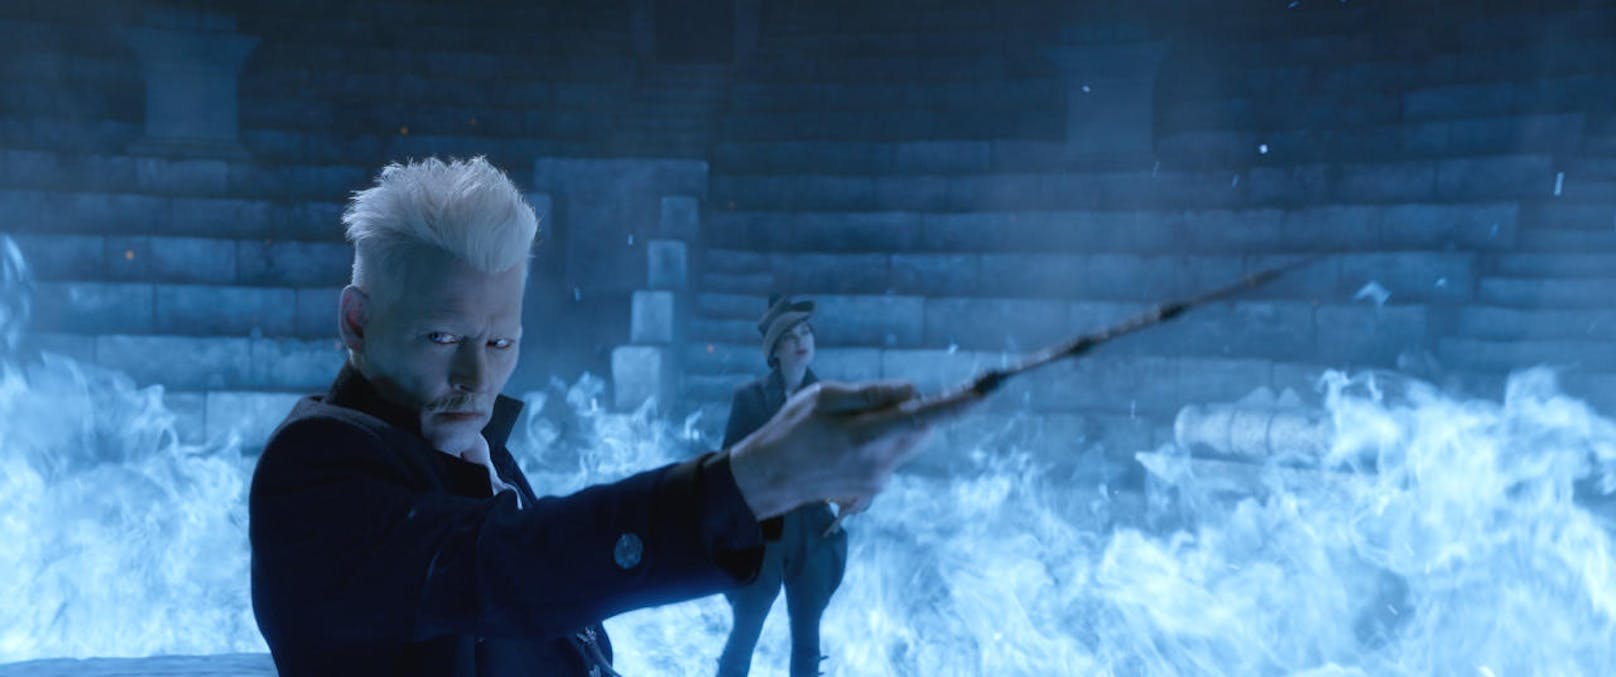 Auch Schurke Gellert Grindelwald kam bereits in den Potter-Büchern und -Verfilmungen vor. Voldemort nahm ihm kurz vor Ende der Saga den Elderstab ab. In der Kinoversion gibt er das mächtige magische Artefakt freiwillig heraus und bleibt am Leben. In der Romanvorlage weigert er sich und wird von Voldemort getötet.